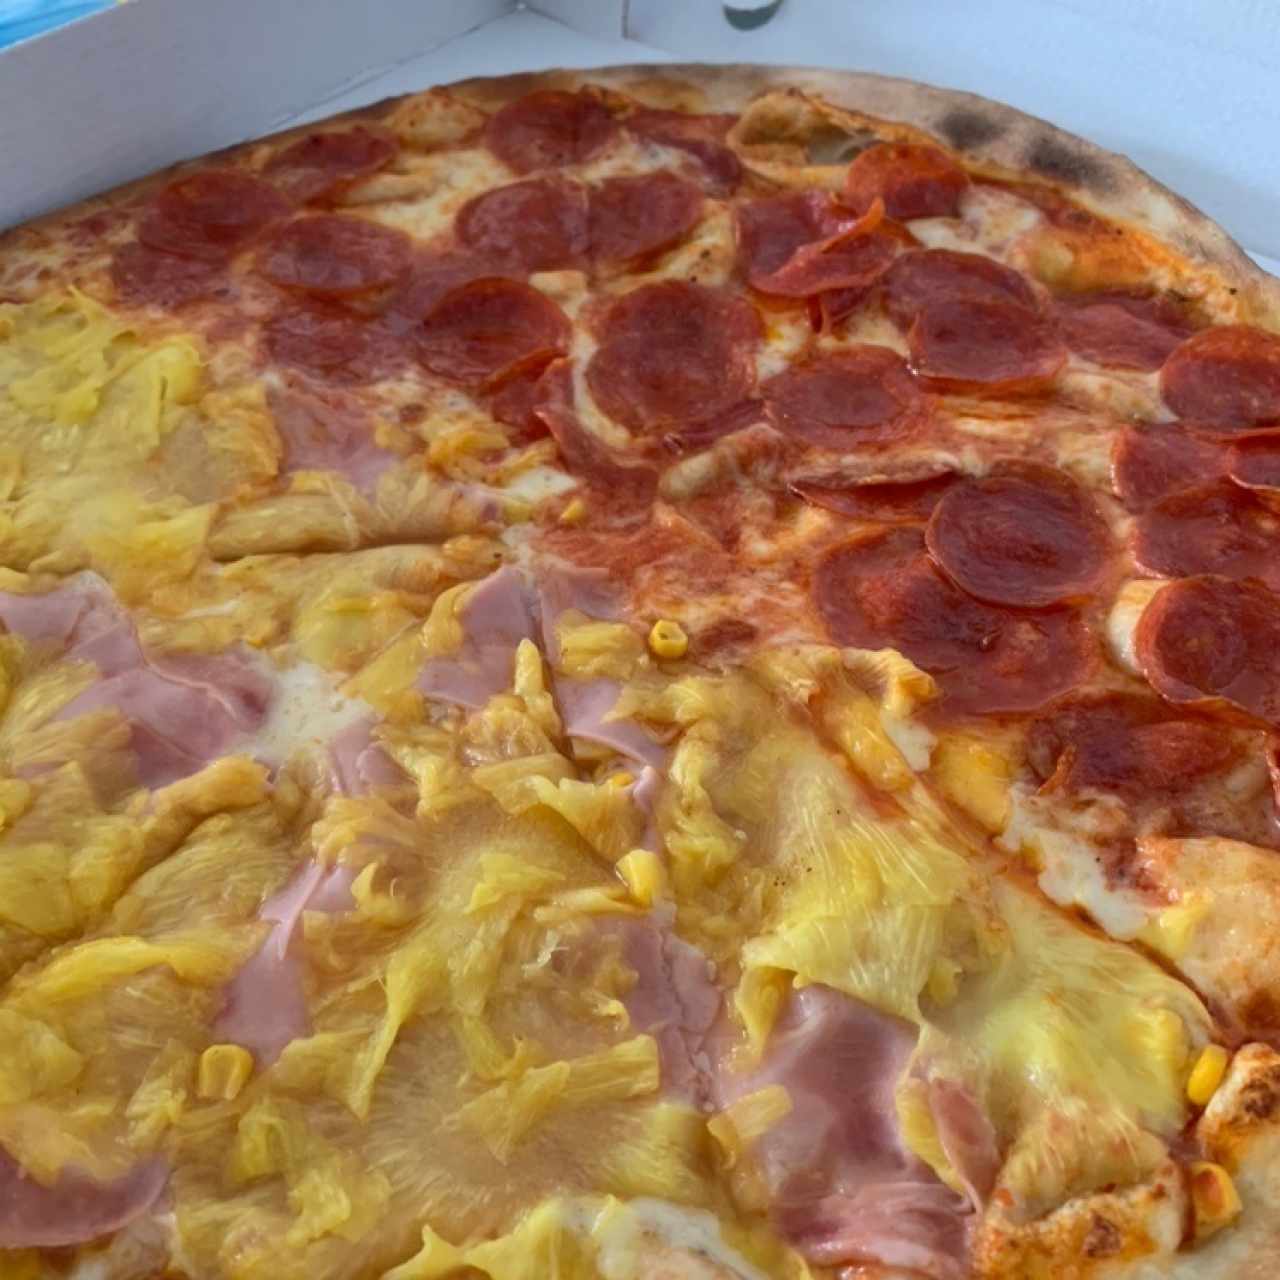 Pizza familiar de pepperoni, jamón, piña y maíz